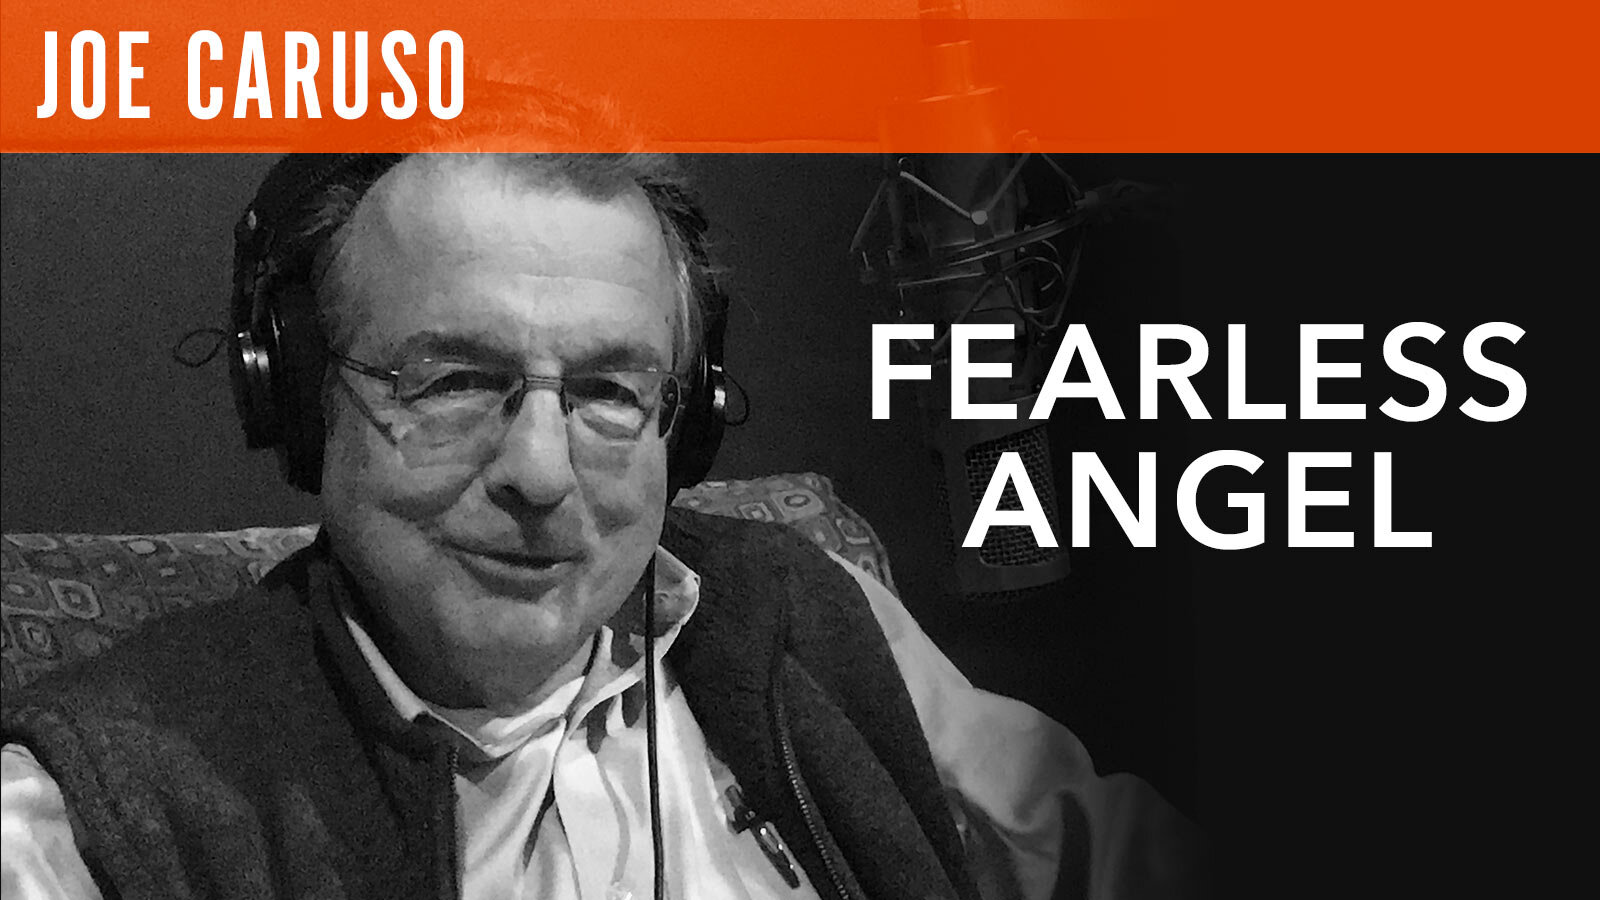 Joe Caruso, "Fearless Angel"